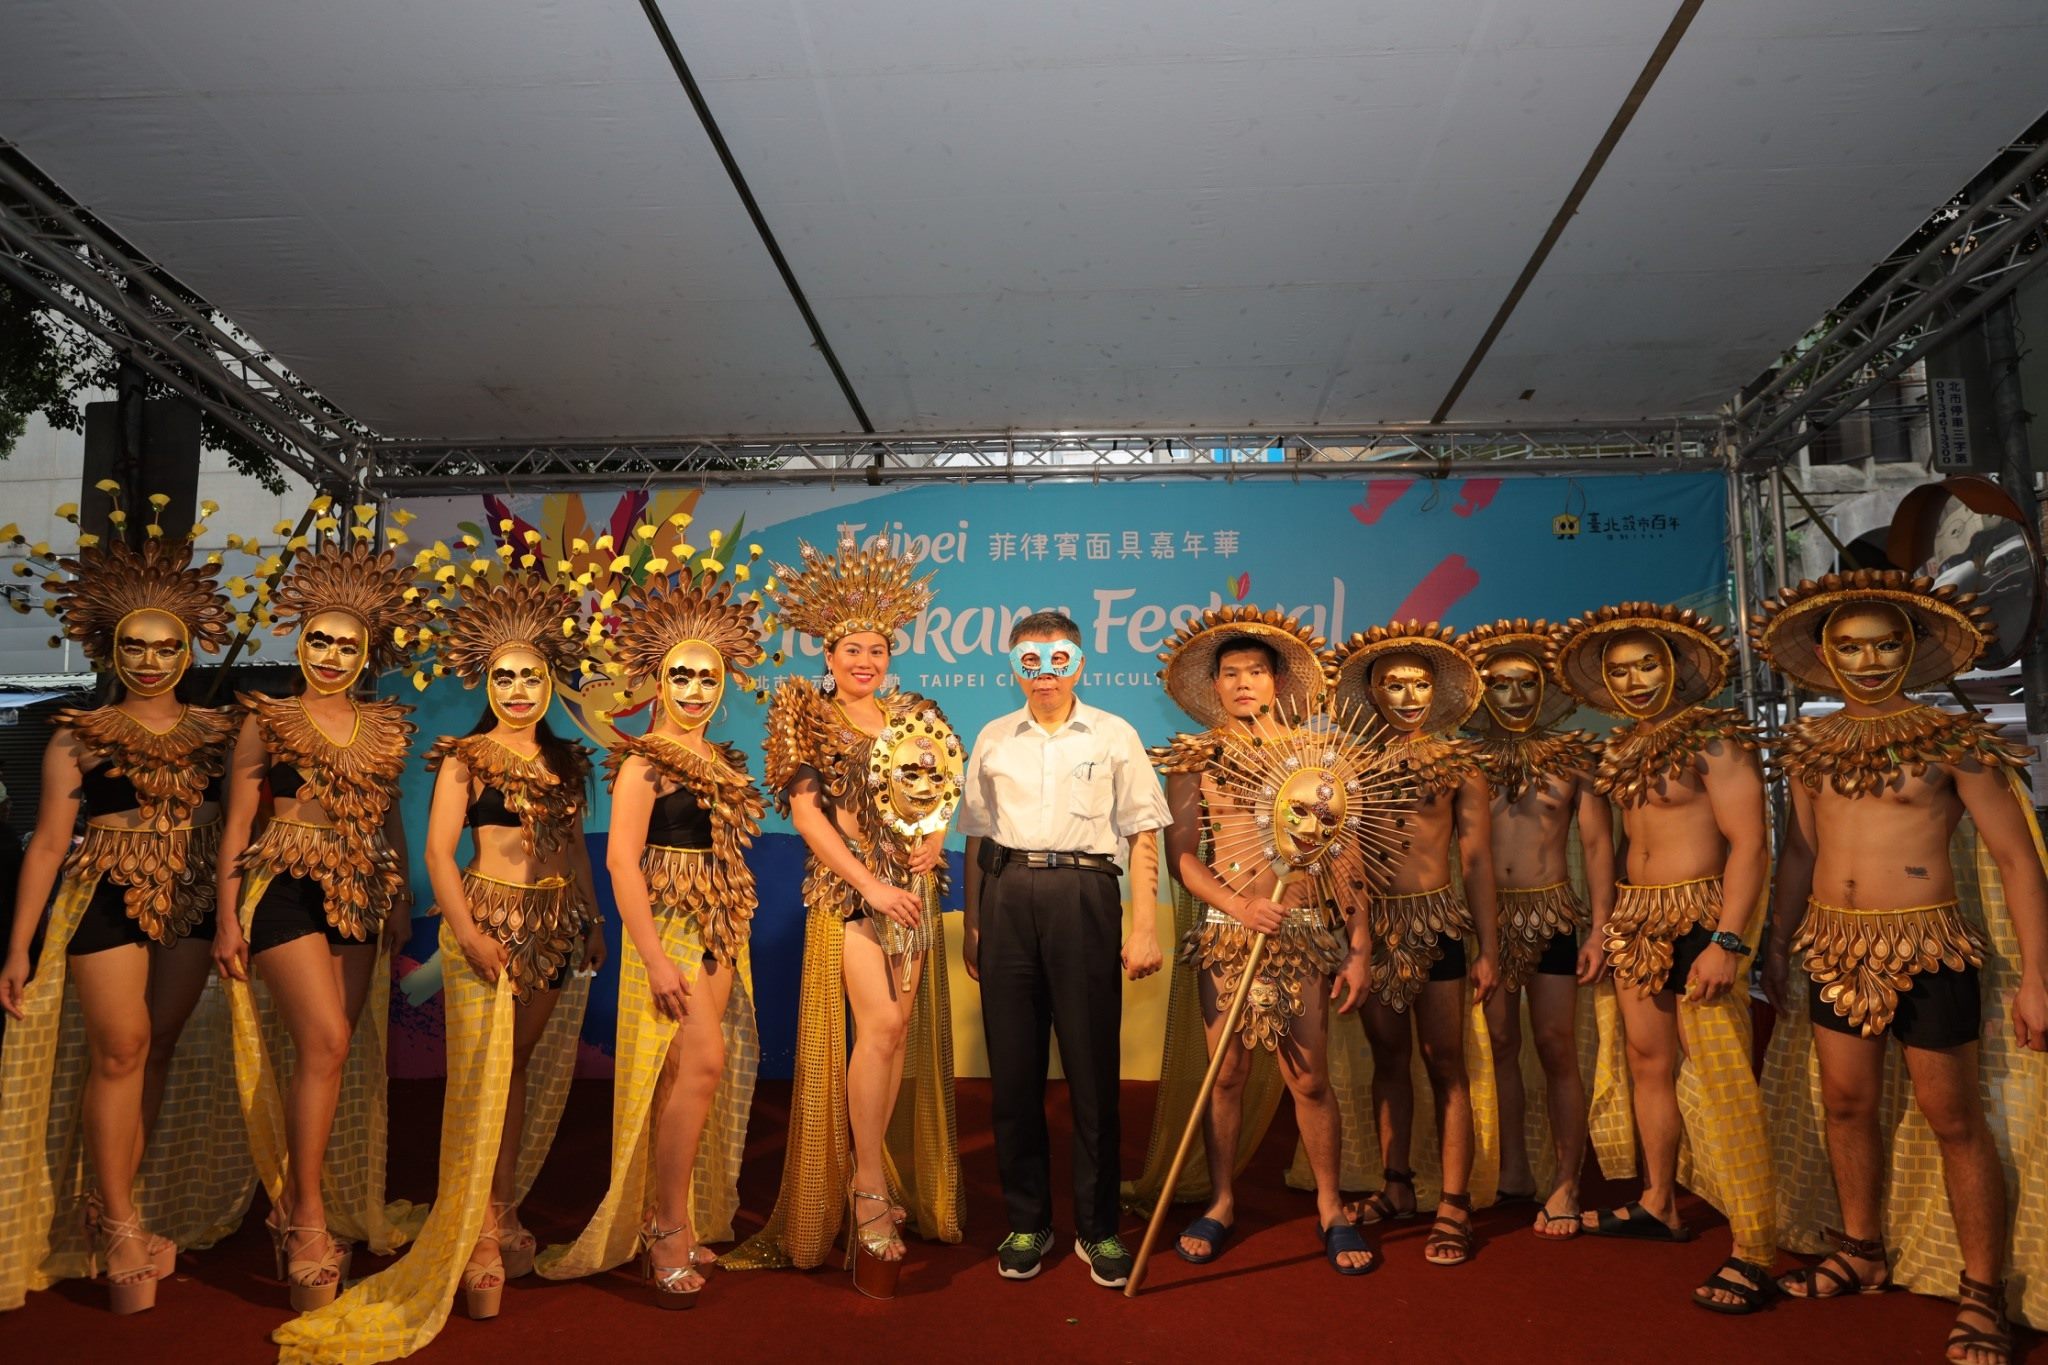 10-新住民、外国人労働者たちがマスカラフェスティバルで自分の国の文化を展示.